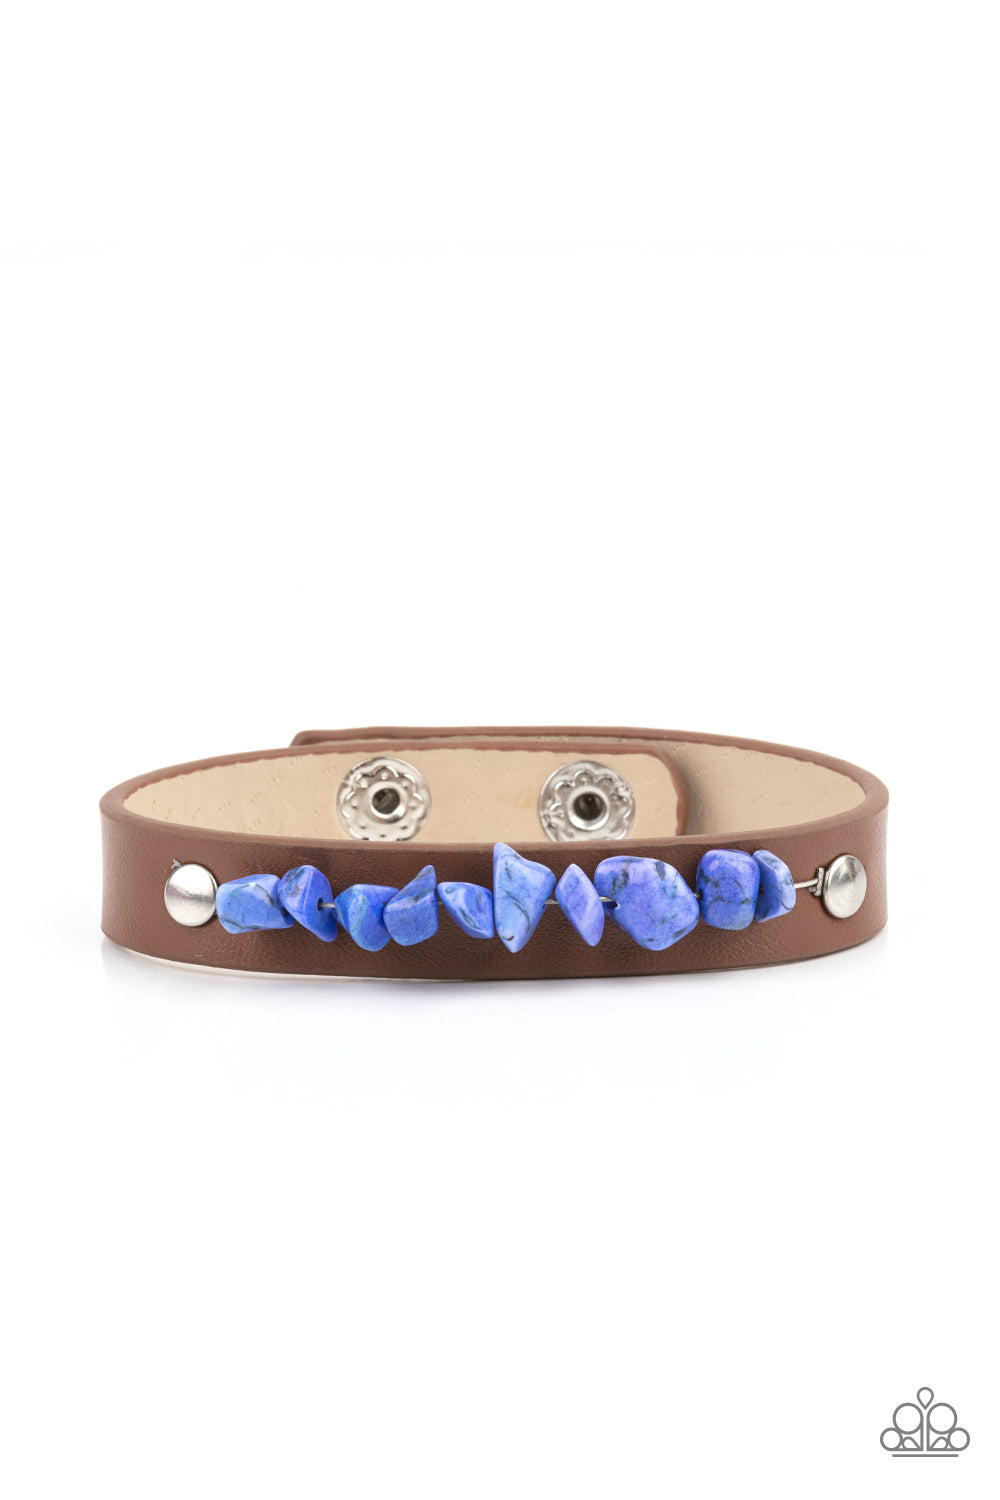 Pebble Paradise Blue Urban Wrap Bracelet - Paparazzi Accessories